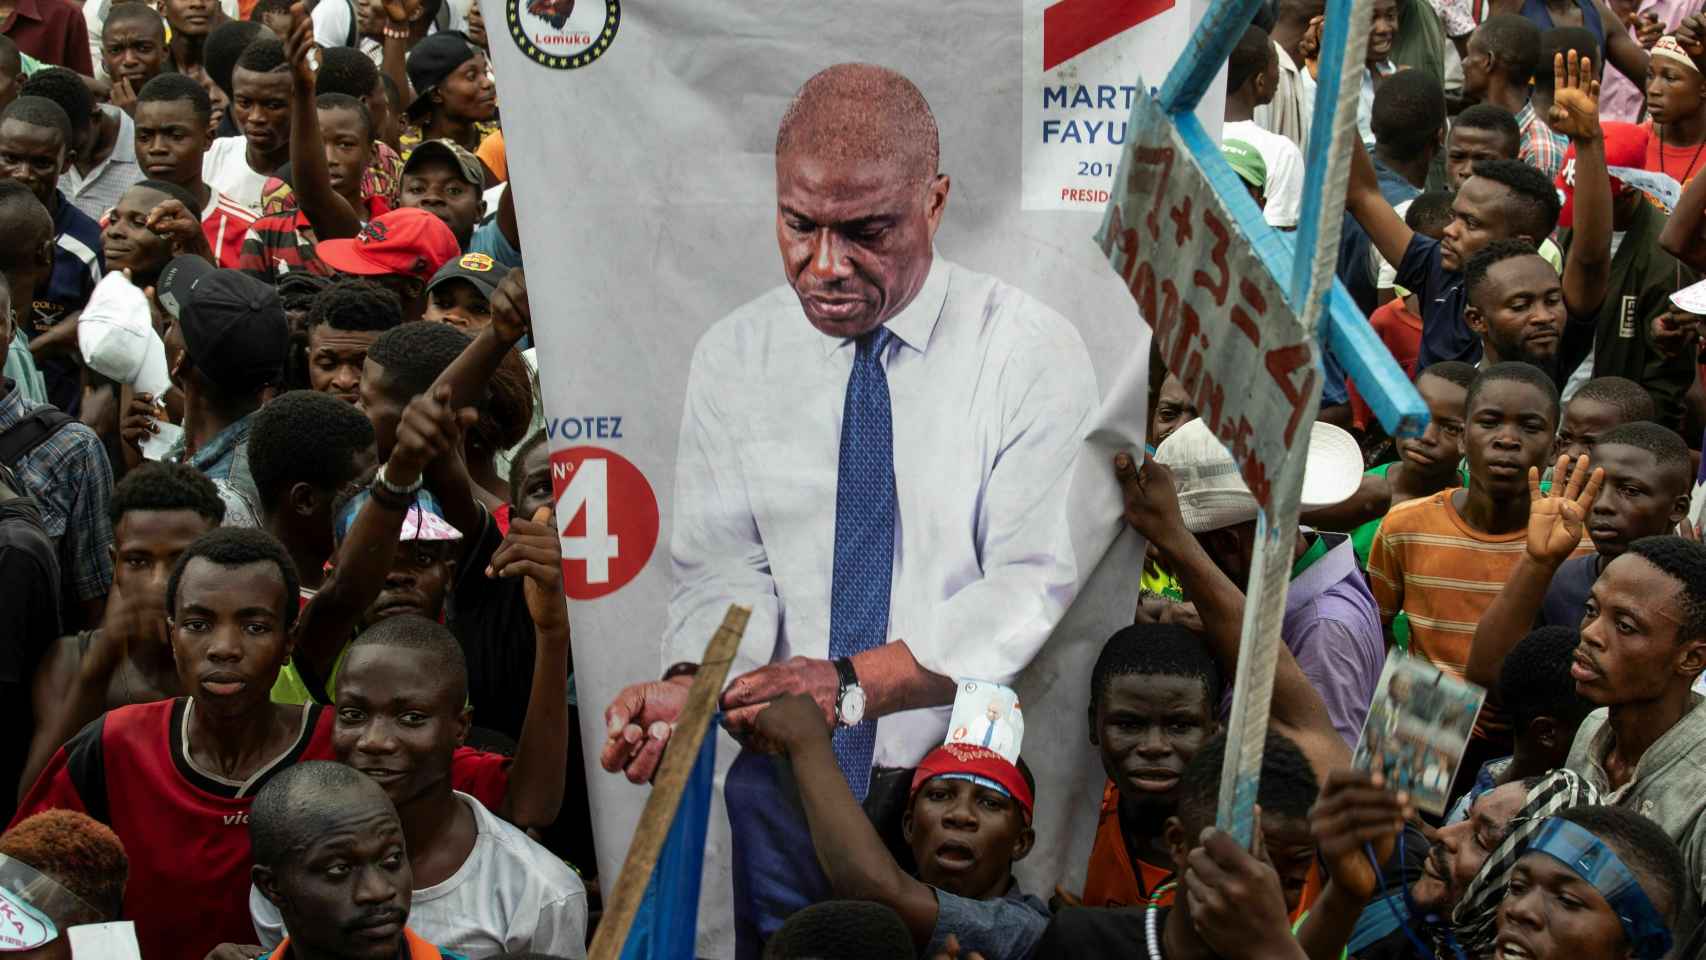 Una manifiestación a favor del candidato Martin Fayulu.